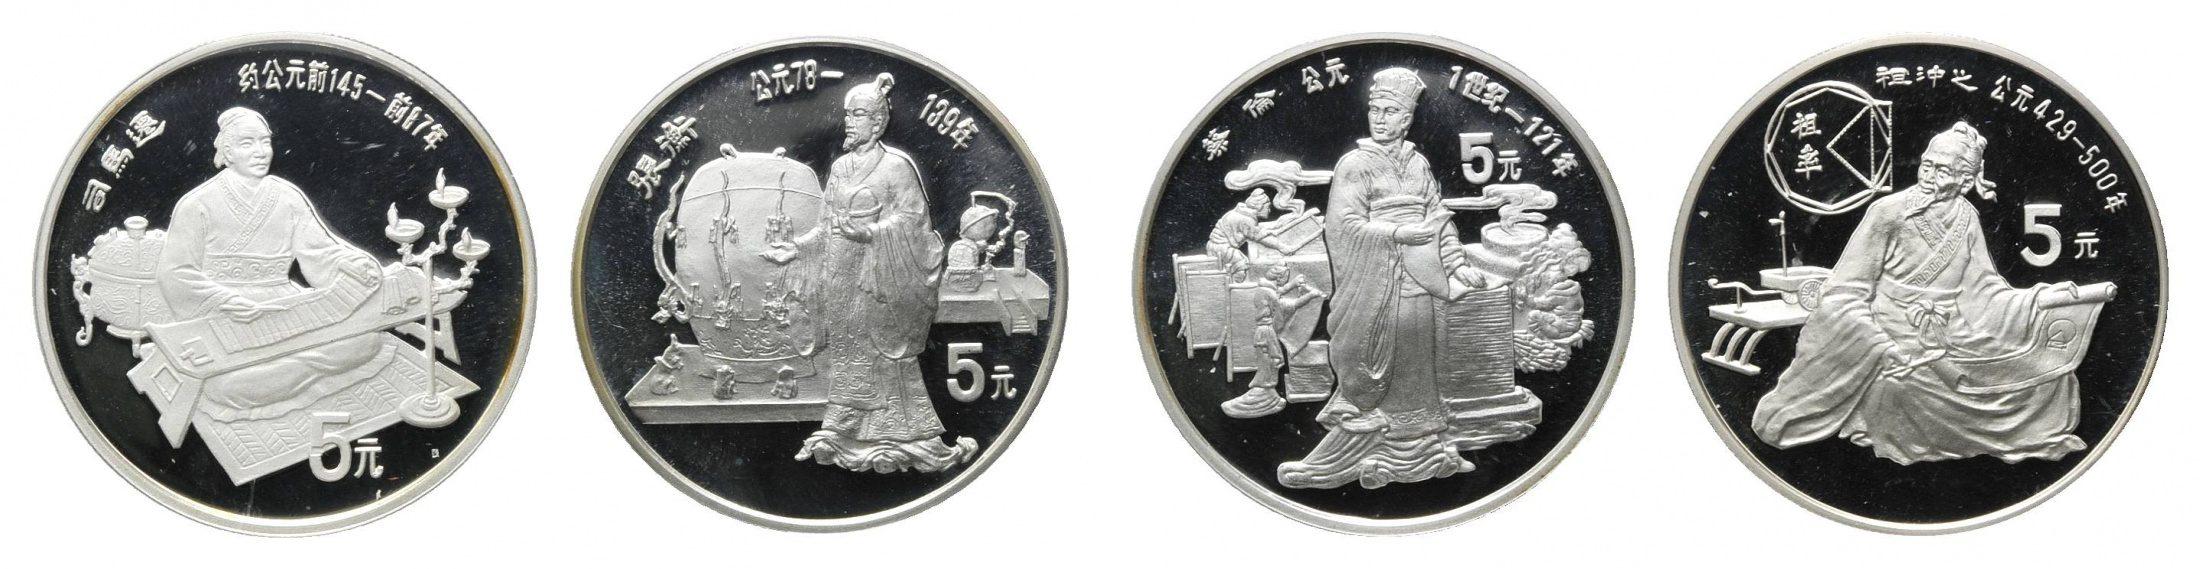 Foto China 5 Yuan 1986